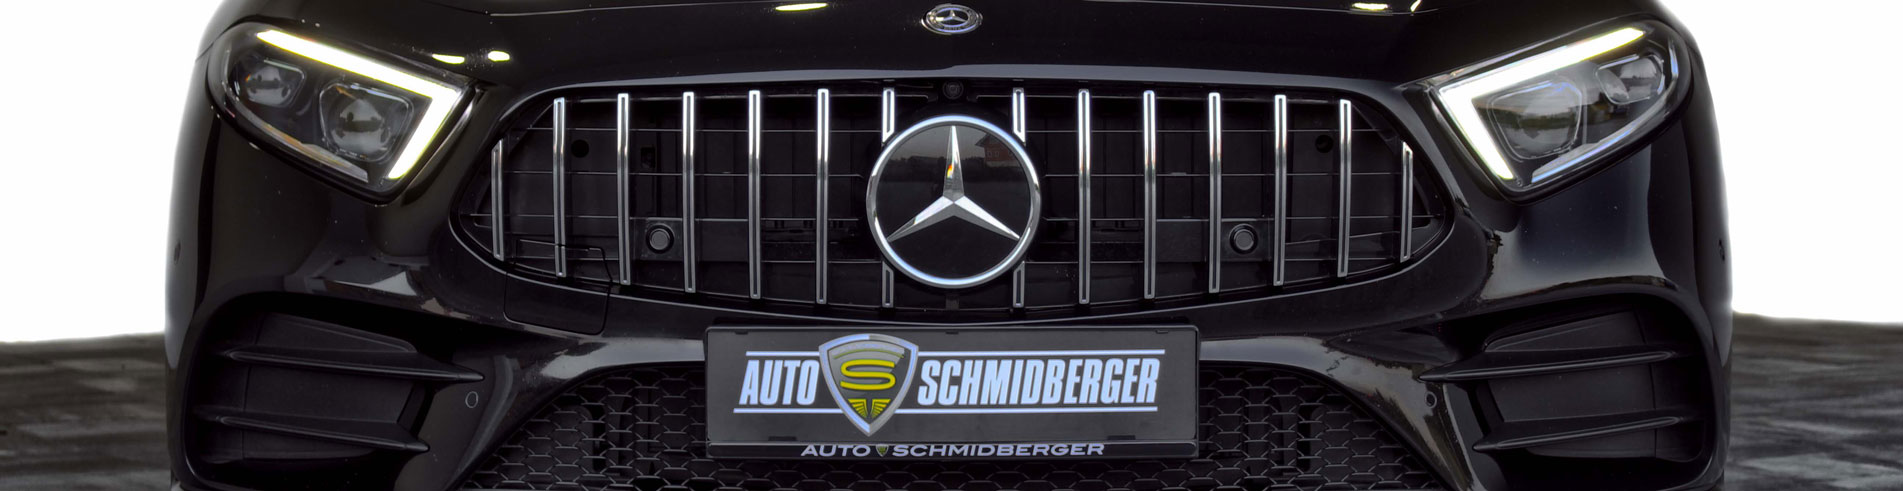 Auto Schmidberger